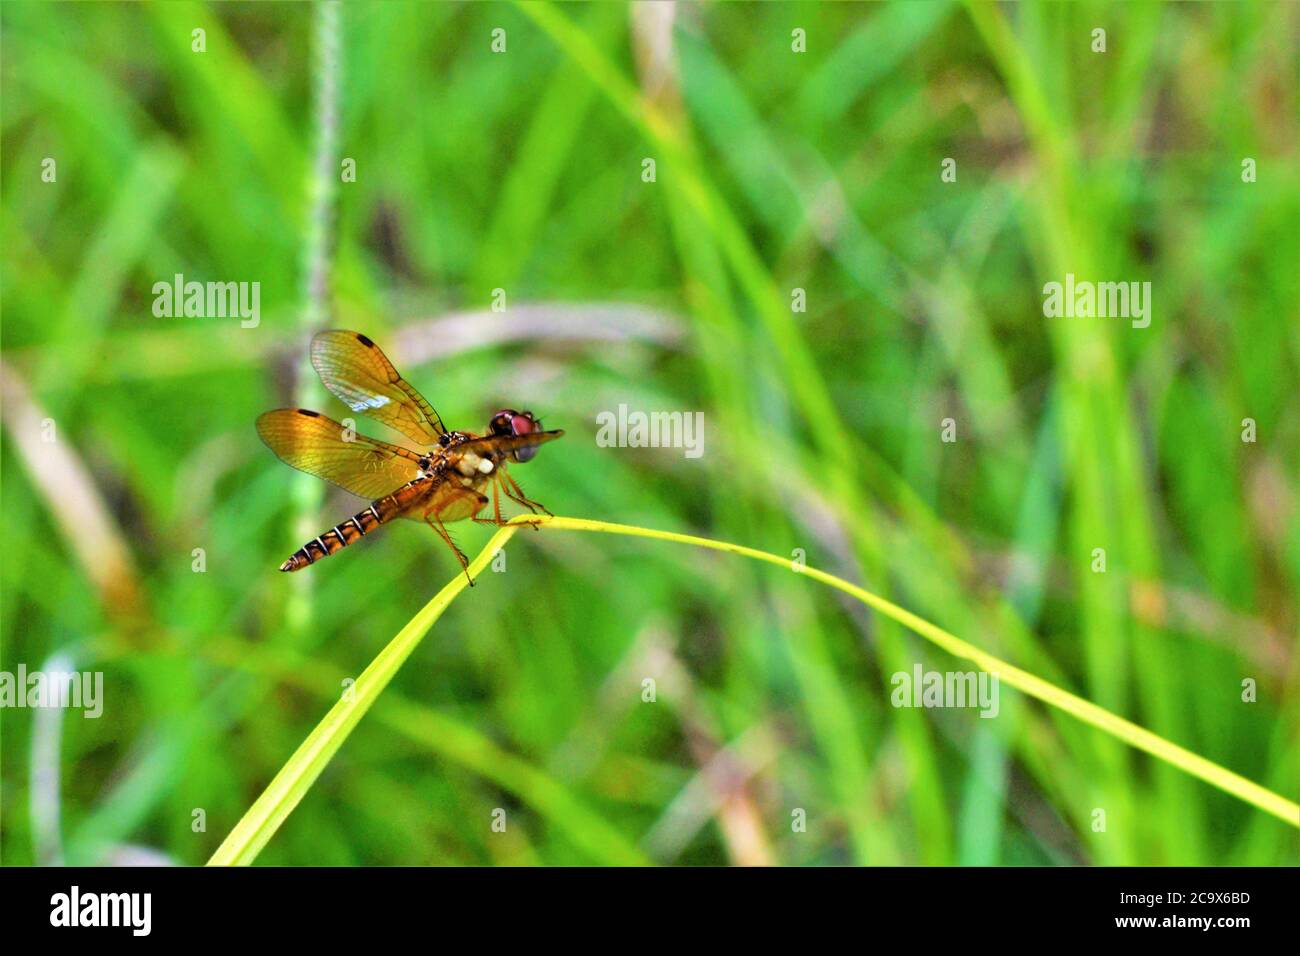 Männliche Ostamberflügel-Libelle. Stockfoto